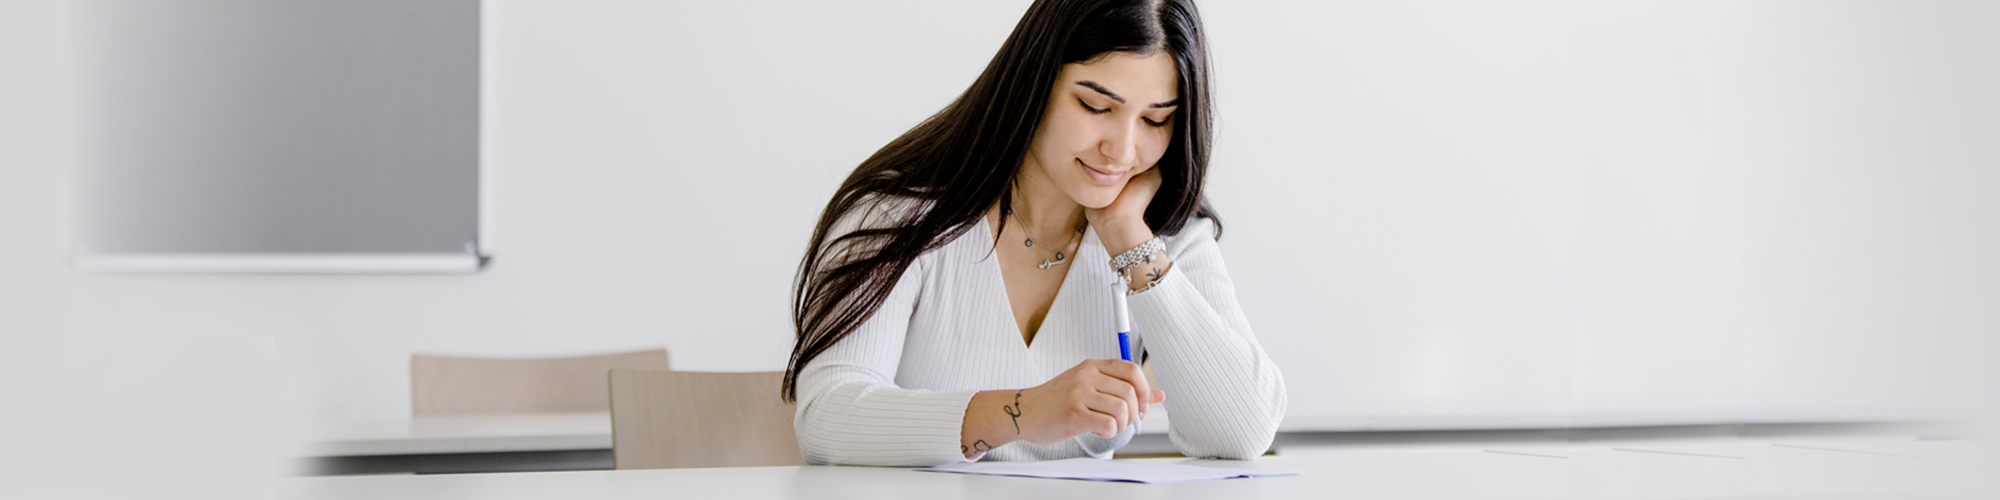 junge Frau bei einer Prüfung am Schreibtisch sitzend